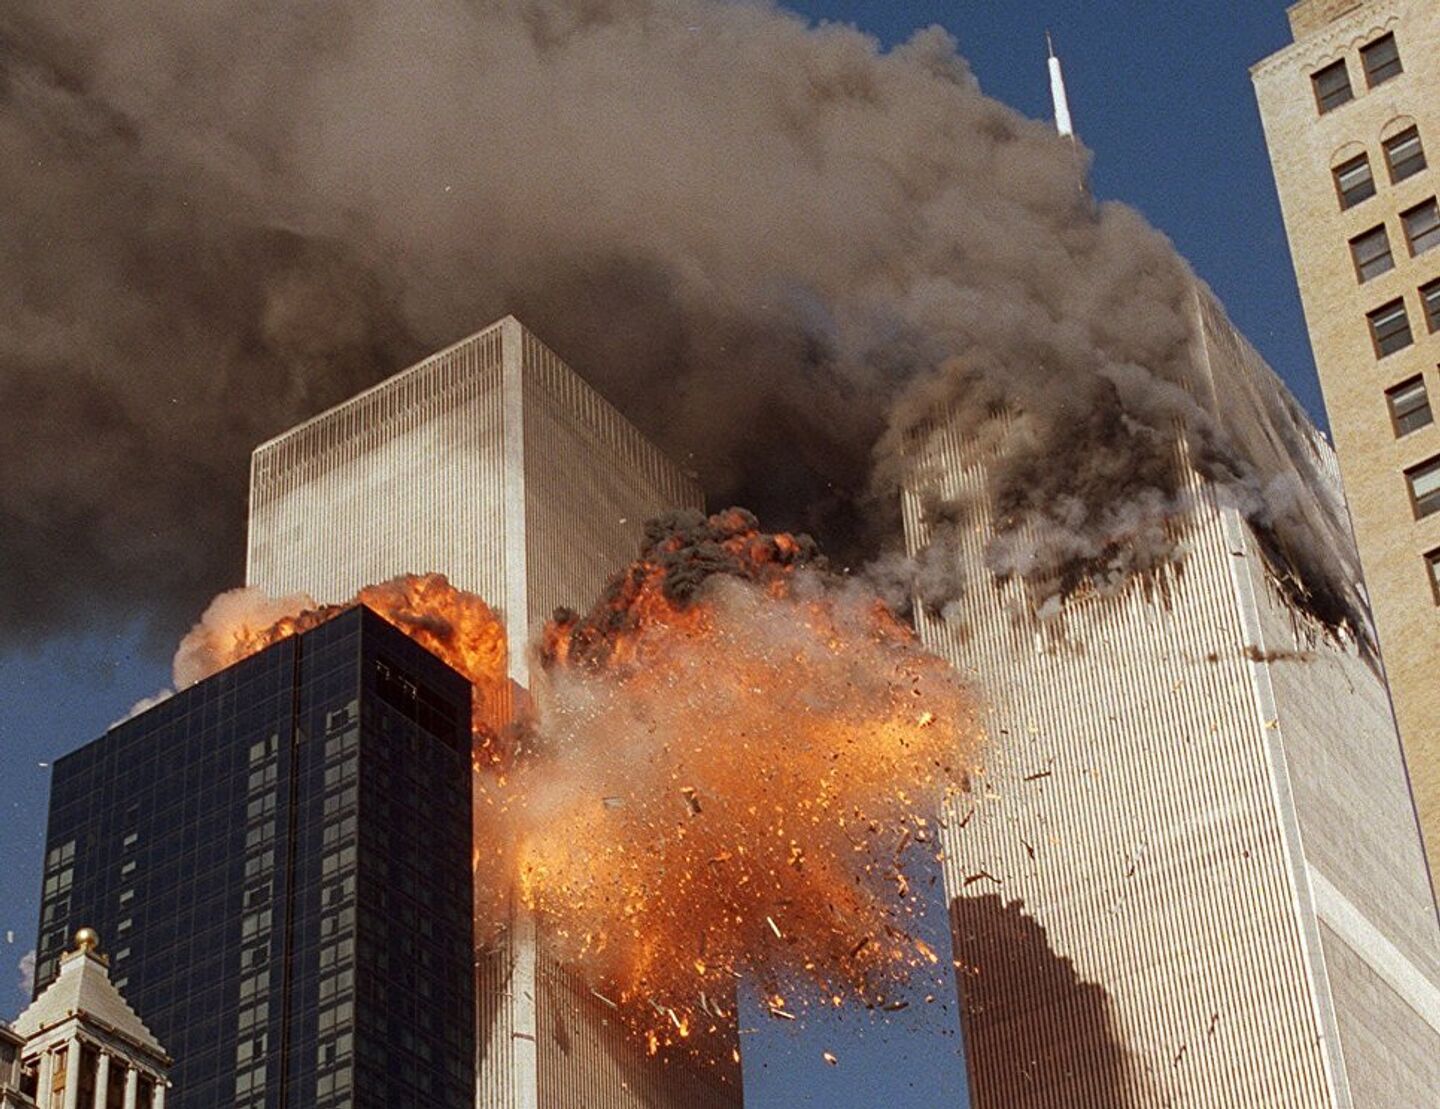 22 ноября 2001. Башни-Близнецы 11 сентября 2001. ВТЦ Нью-Йорк 2001. Башни Близнецы в Нью-Йорке 11 сентября.